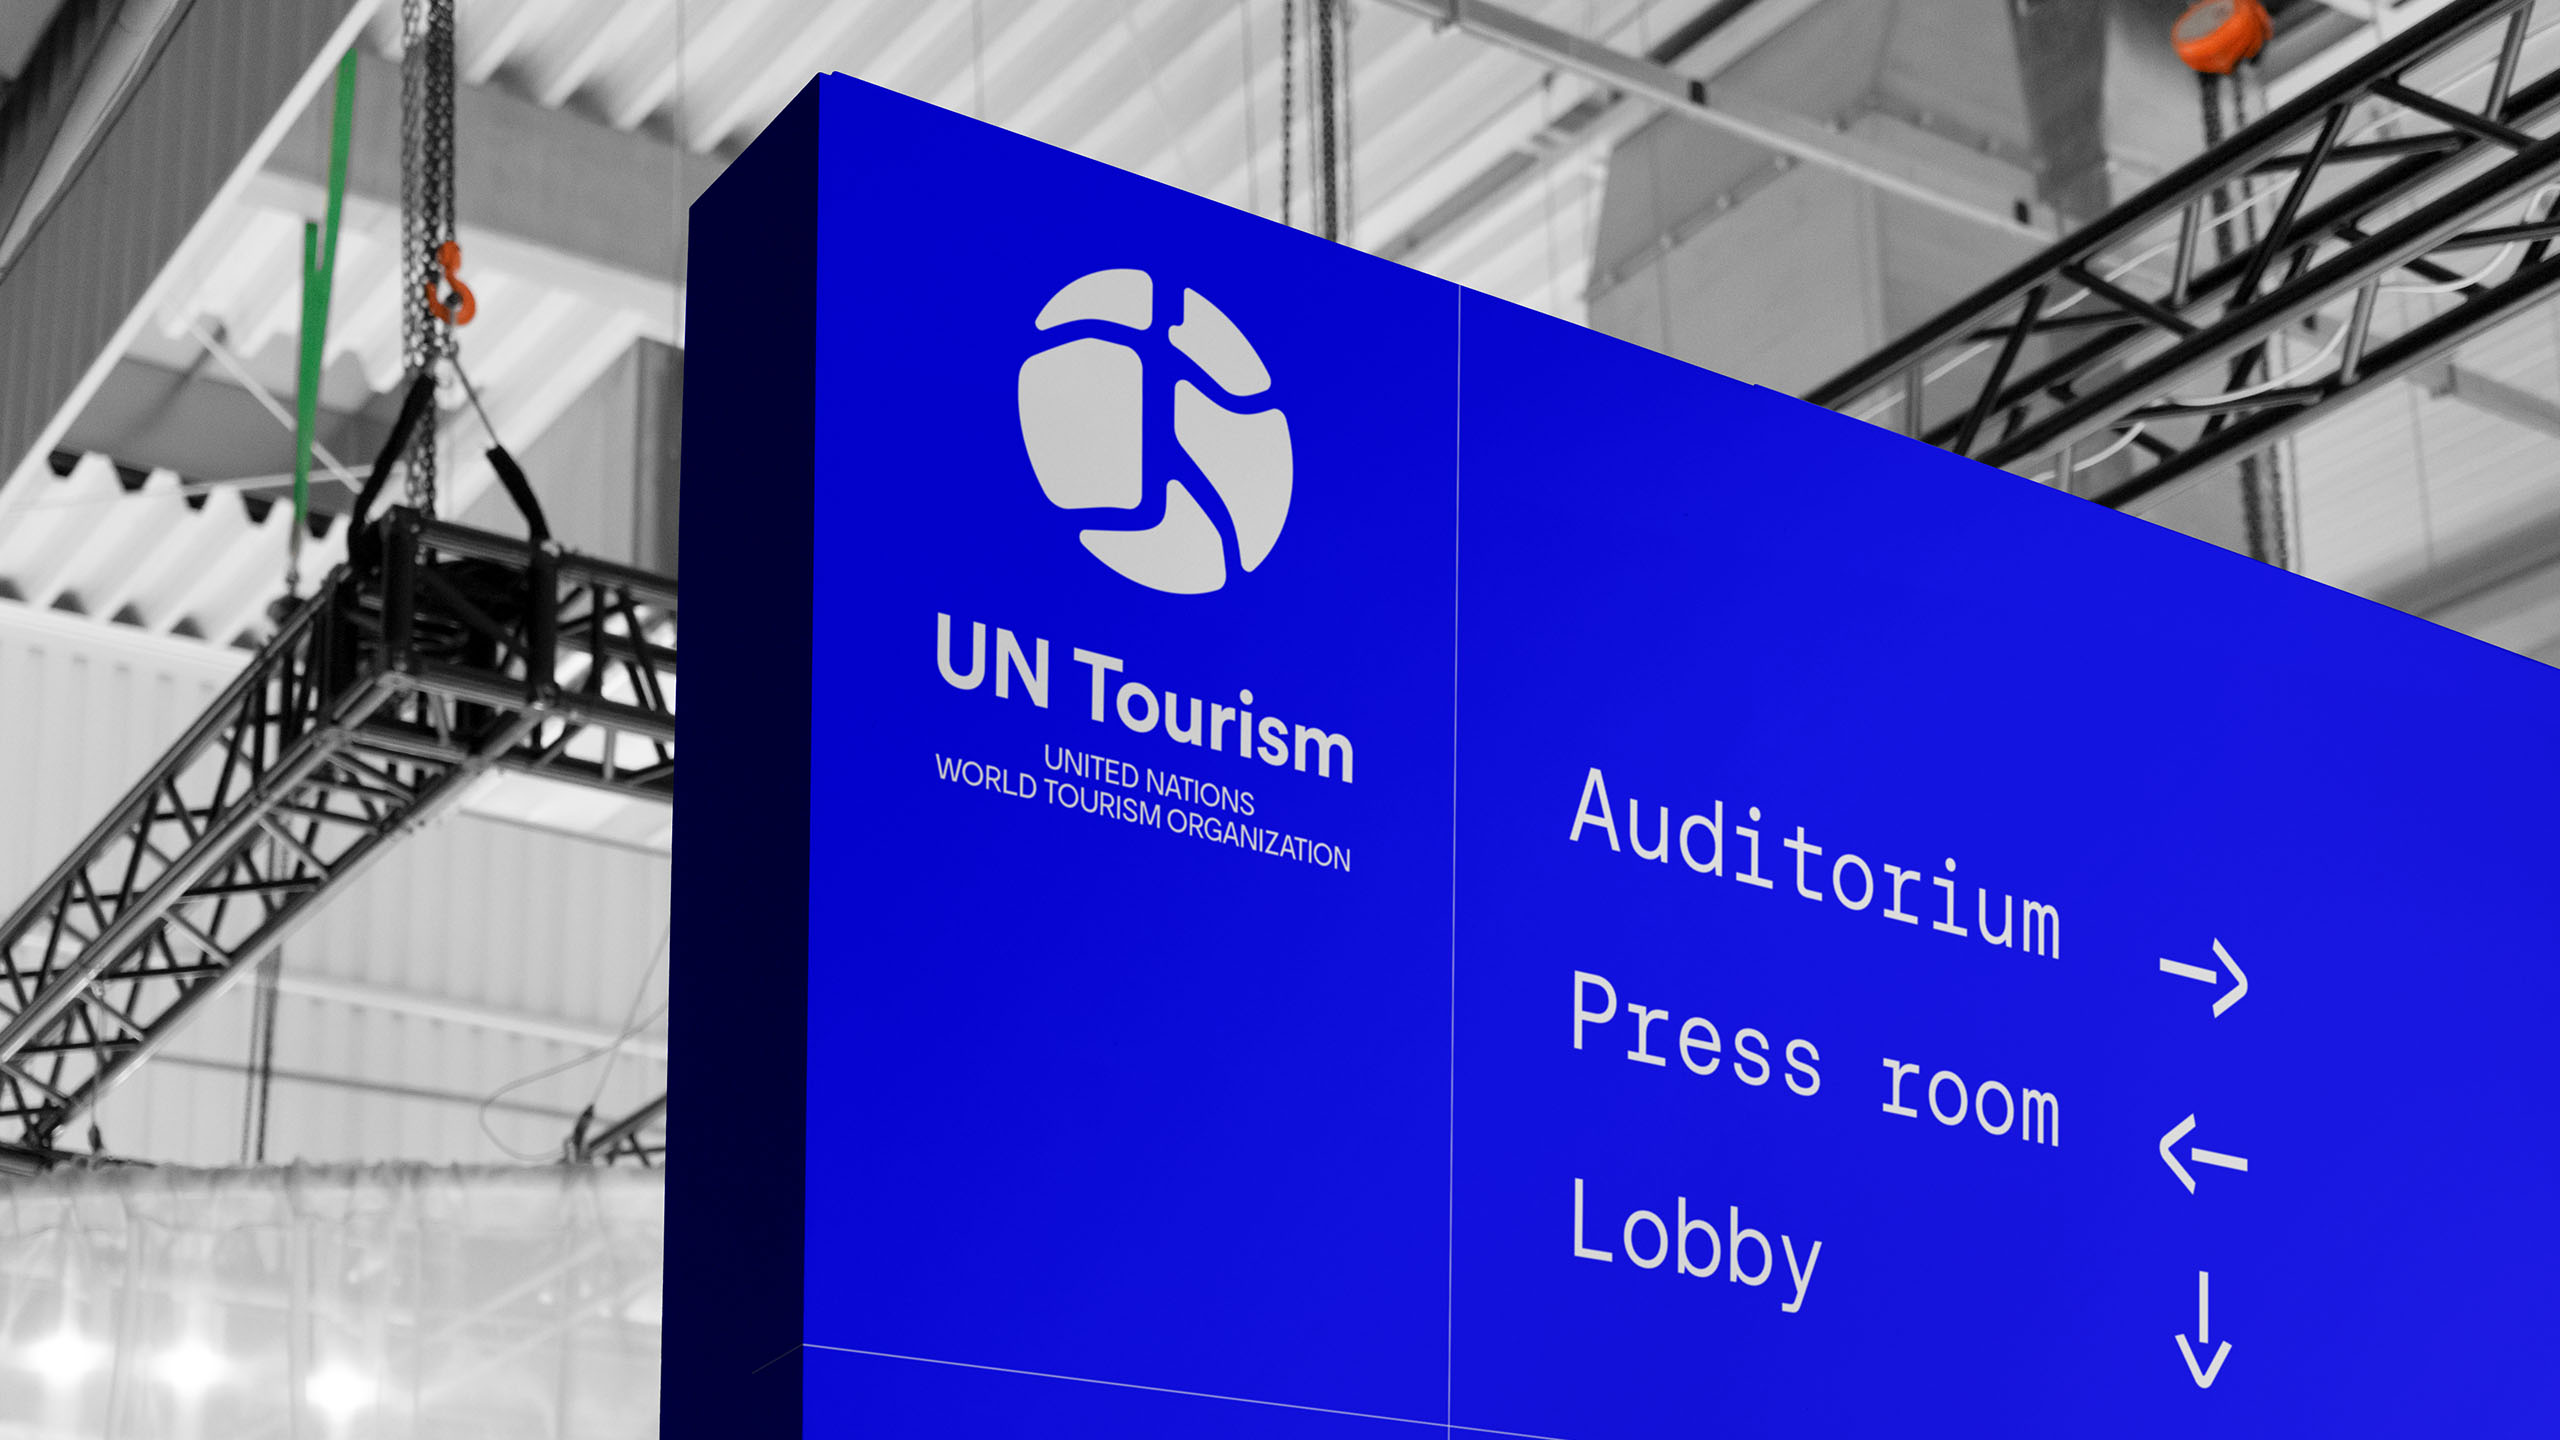 UN Tourism signage detail